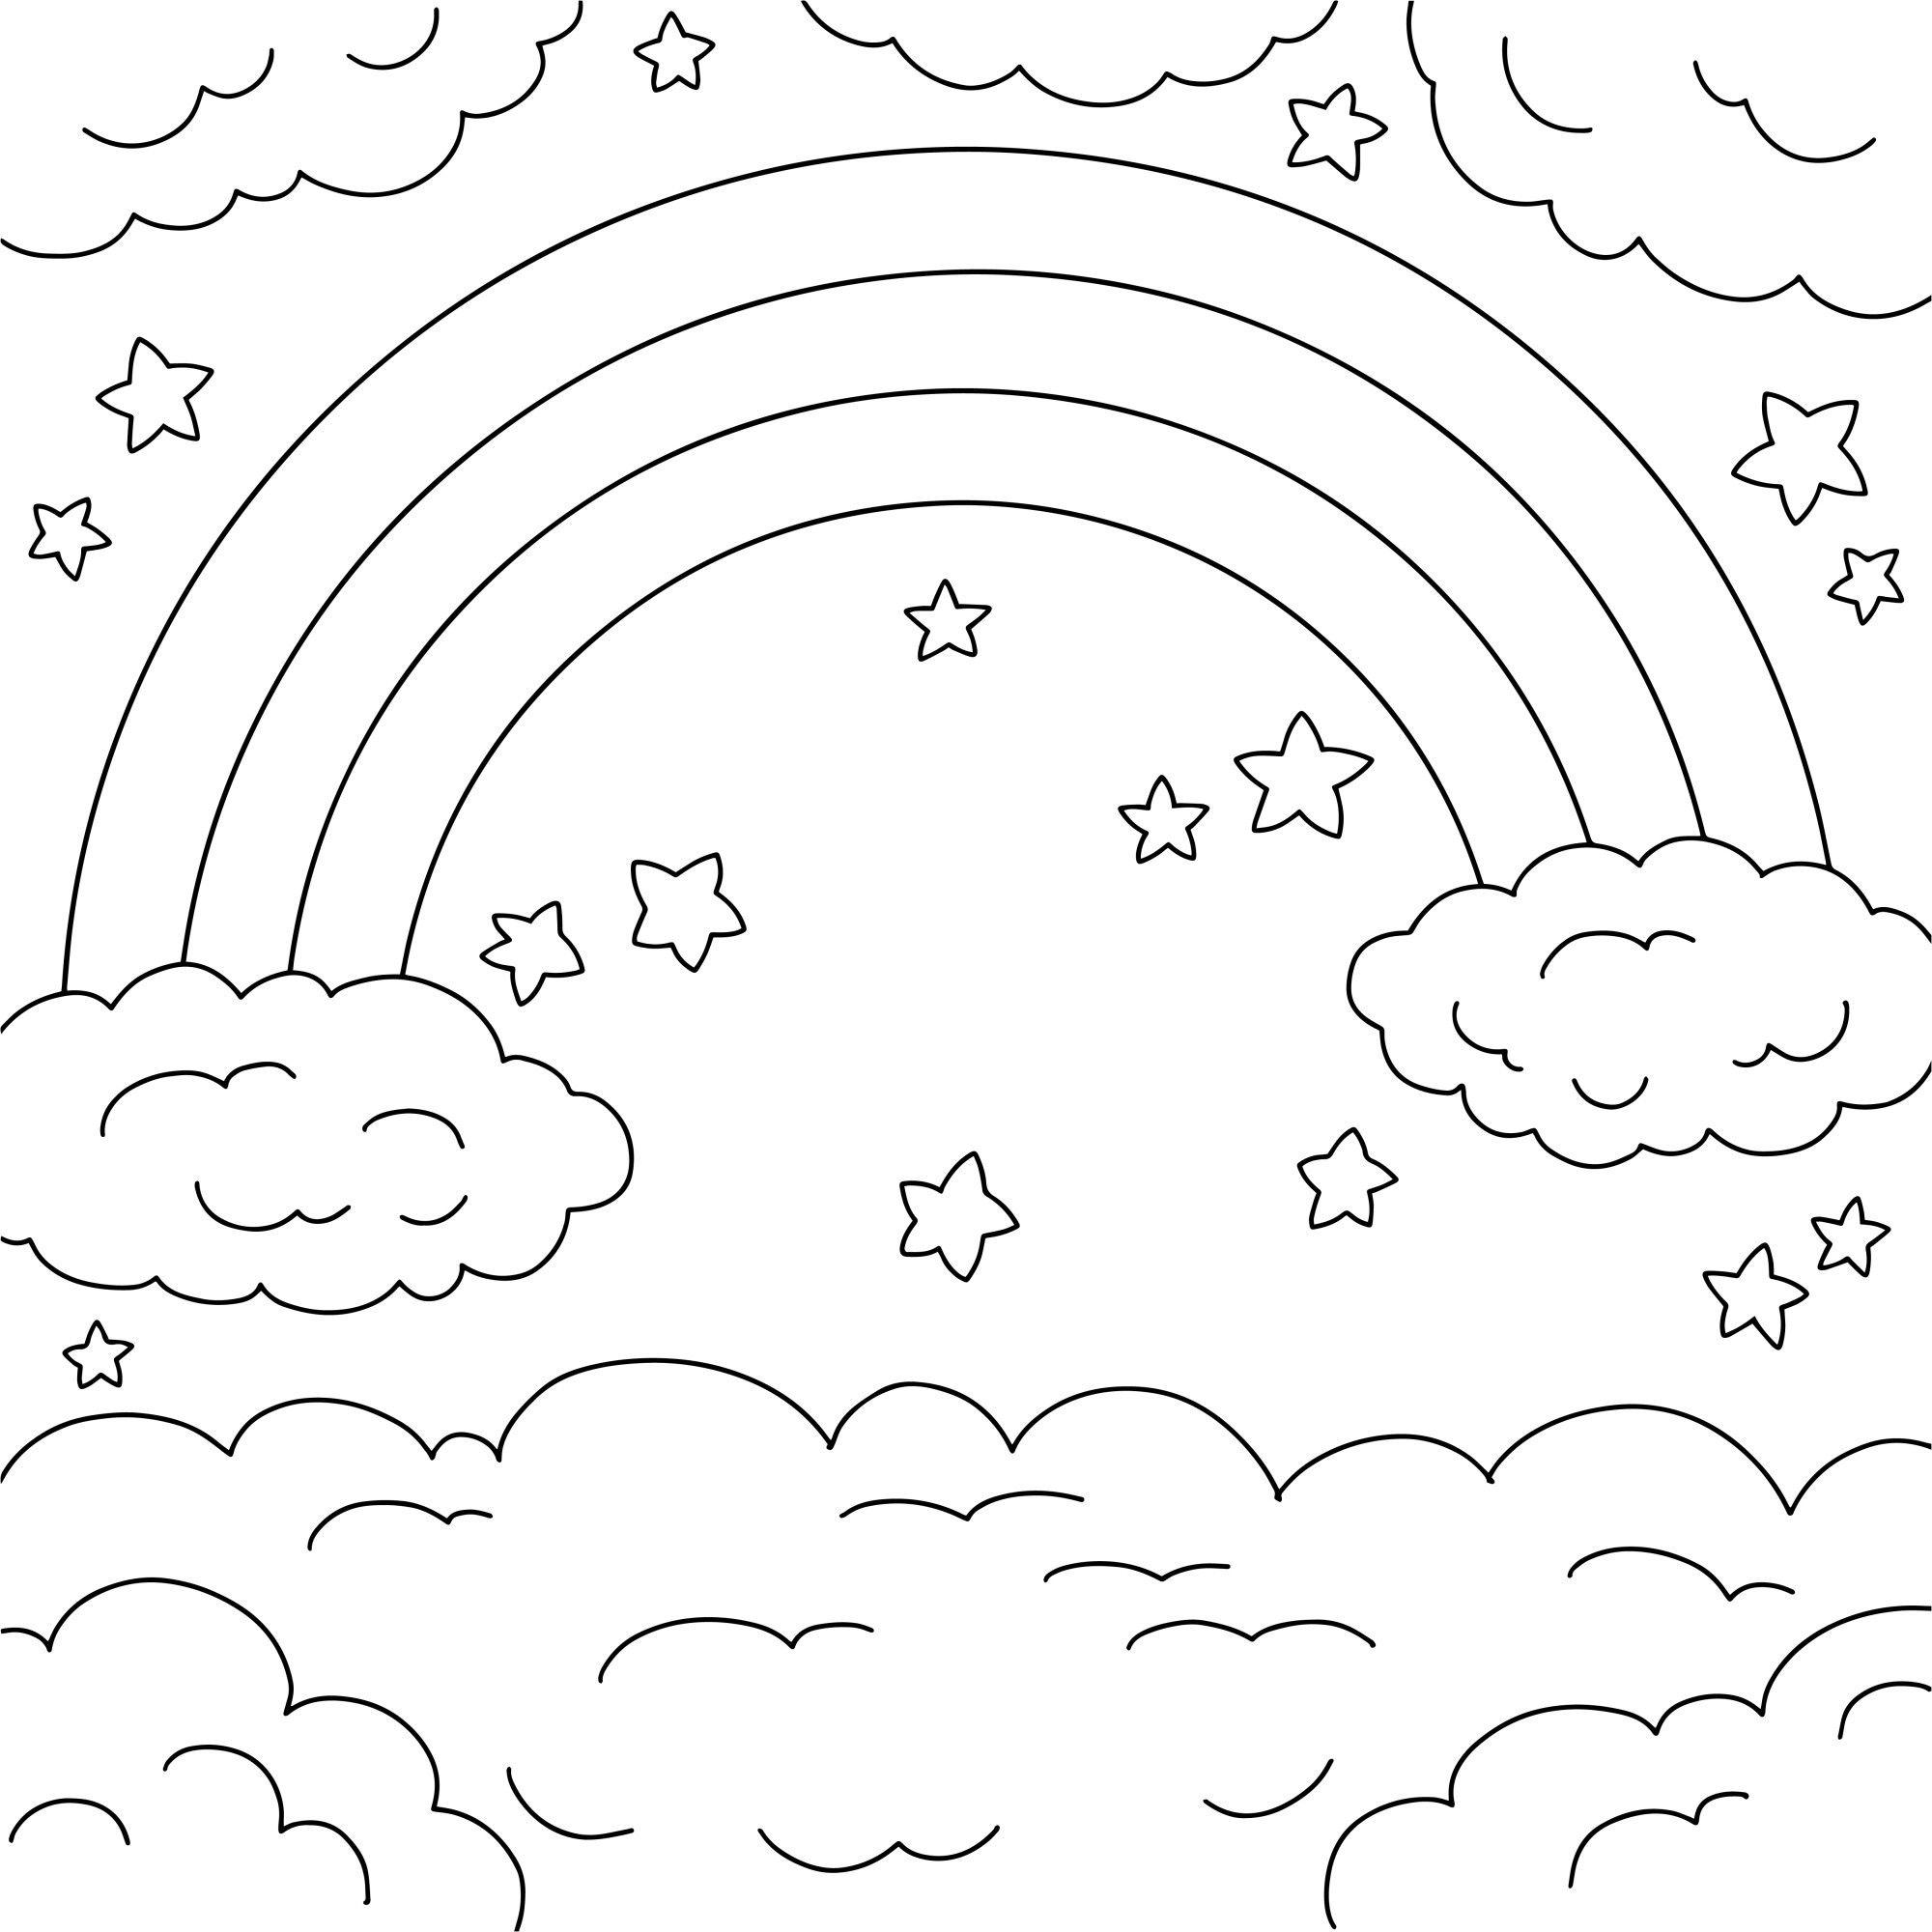 Раскраска для детей: живописный вид радуги в облаках со звездами